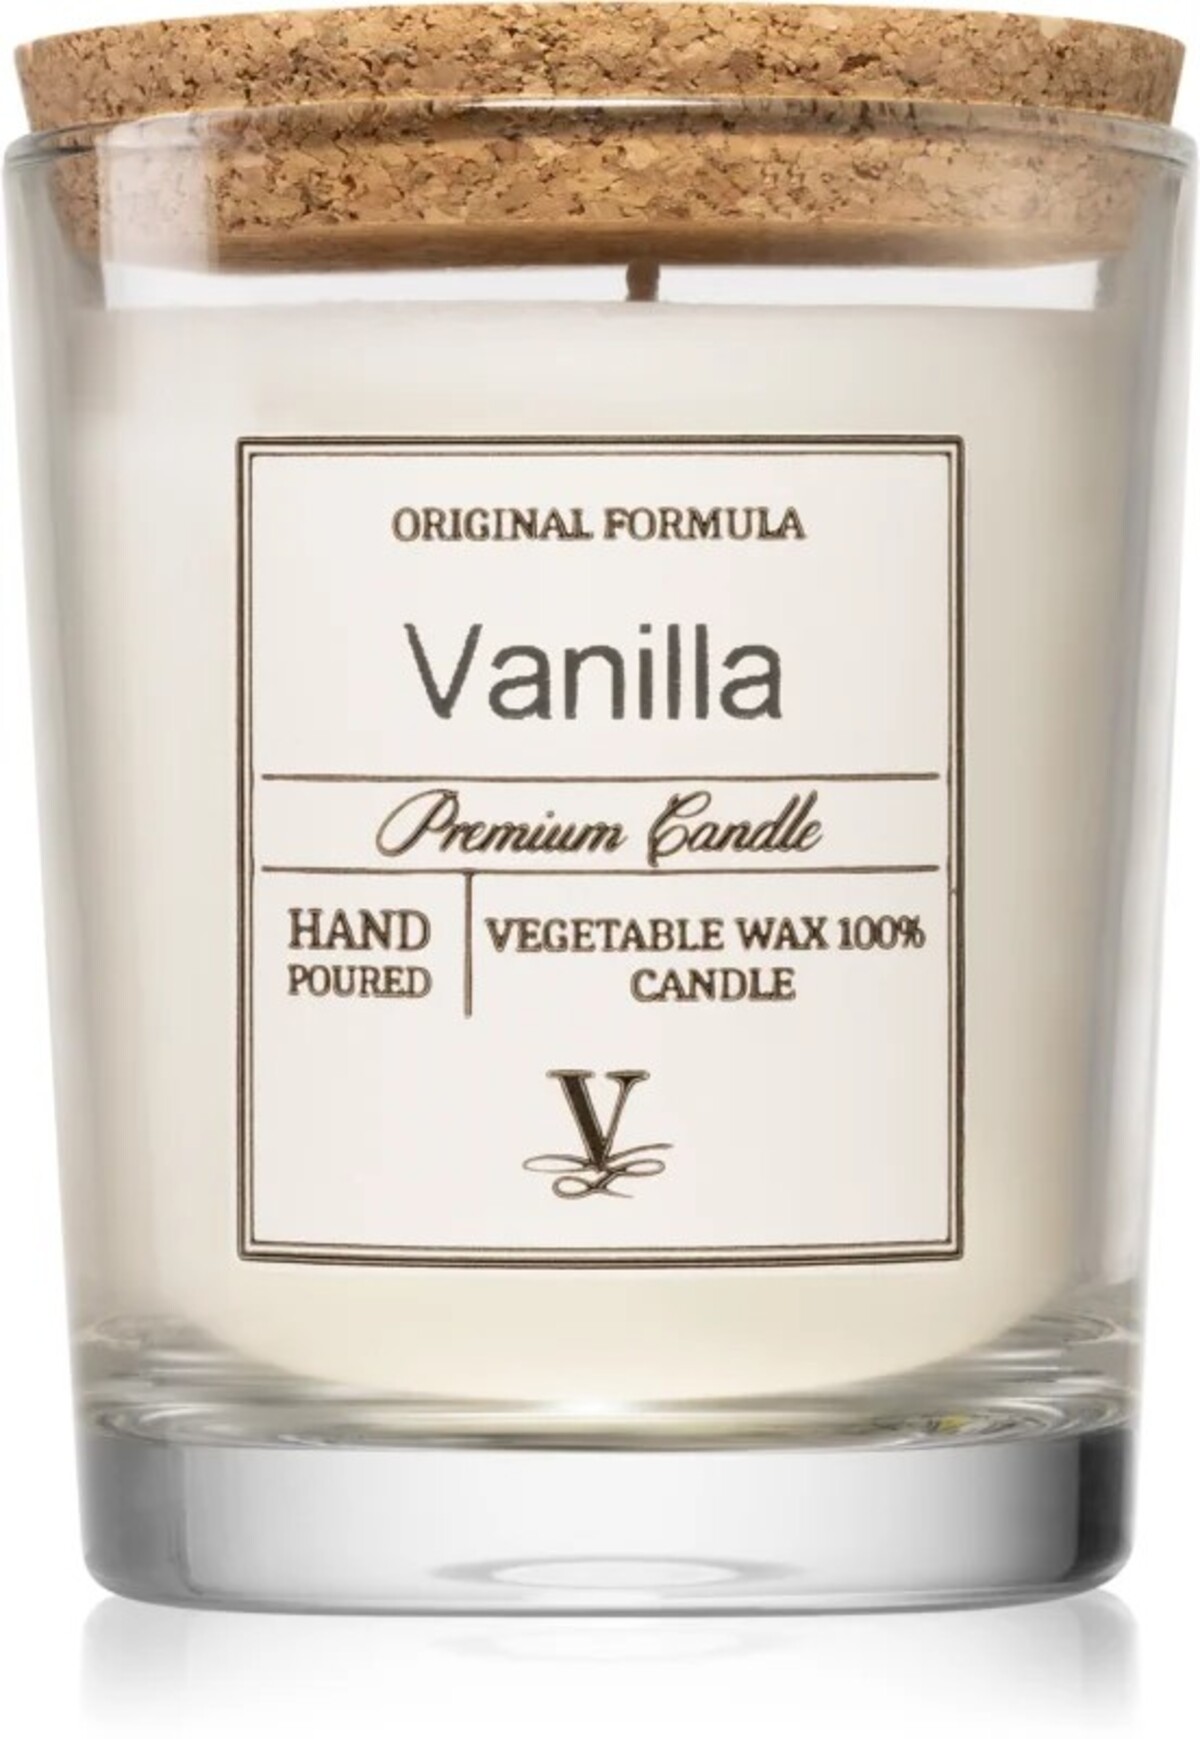 K výbave vanilla Girl nesmie chýbať ani vanilková vonná sviečka. Tento konkrétny produkt od Vila Hermanos môžeš mať už za dostupných 8 eur.